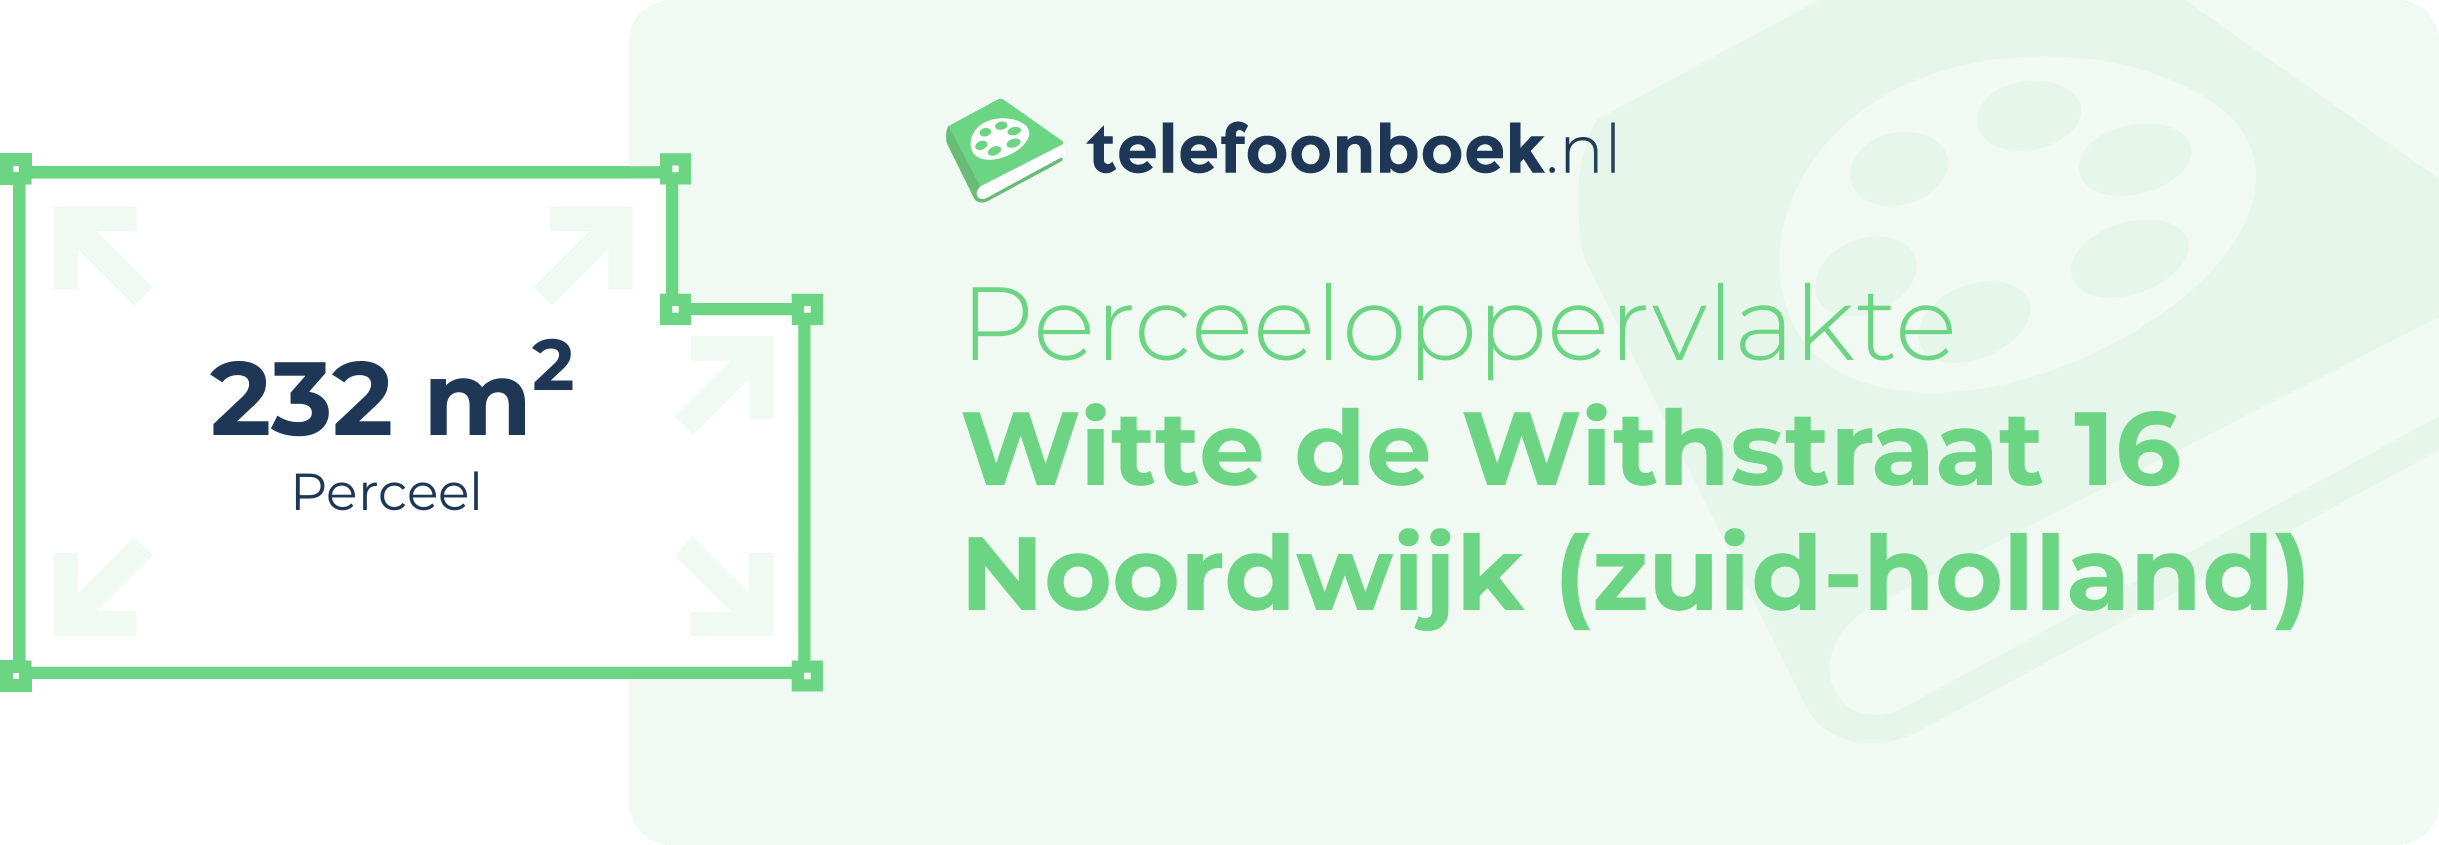 Perceeloppervlakte Witte De Withstraat 16 Noordwijk (Zuid-Holland)